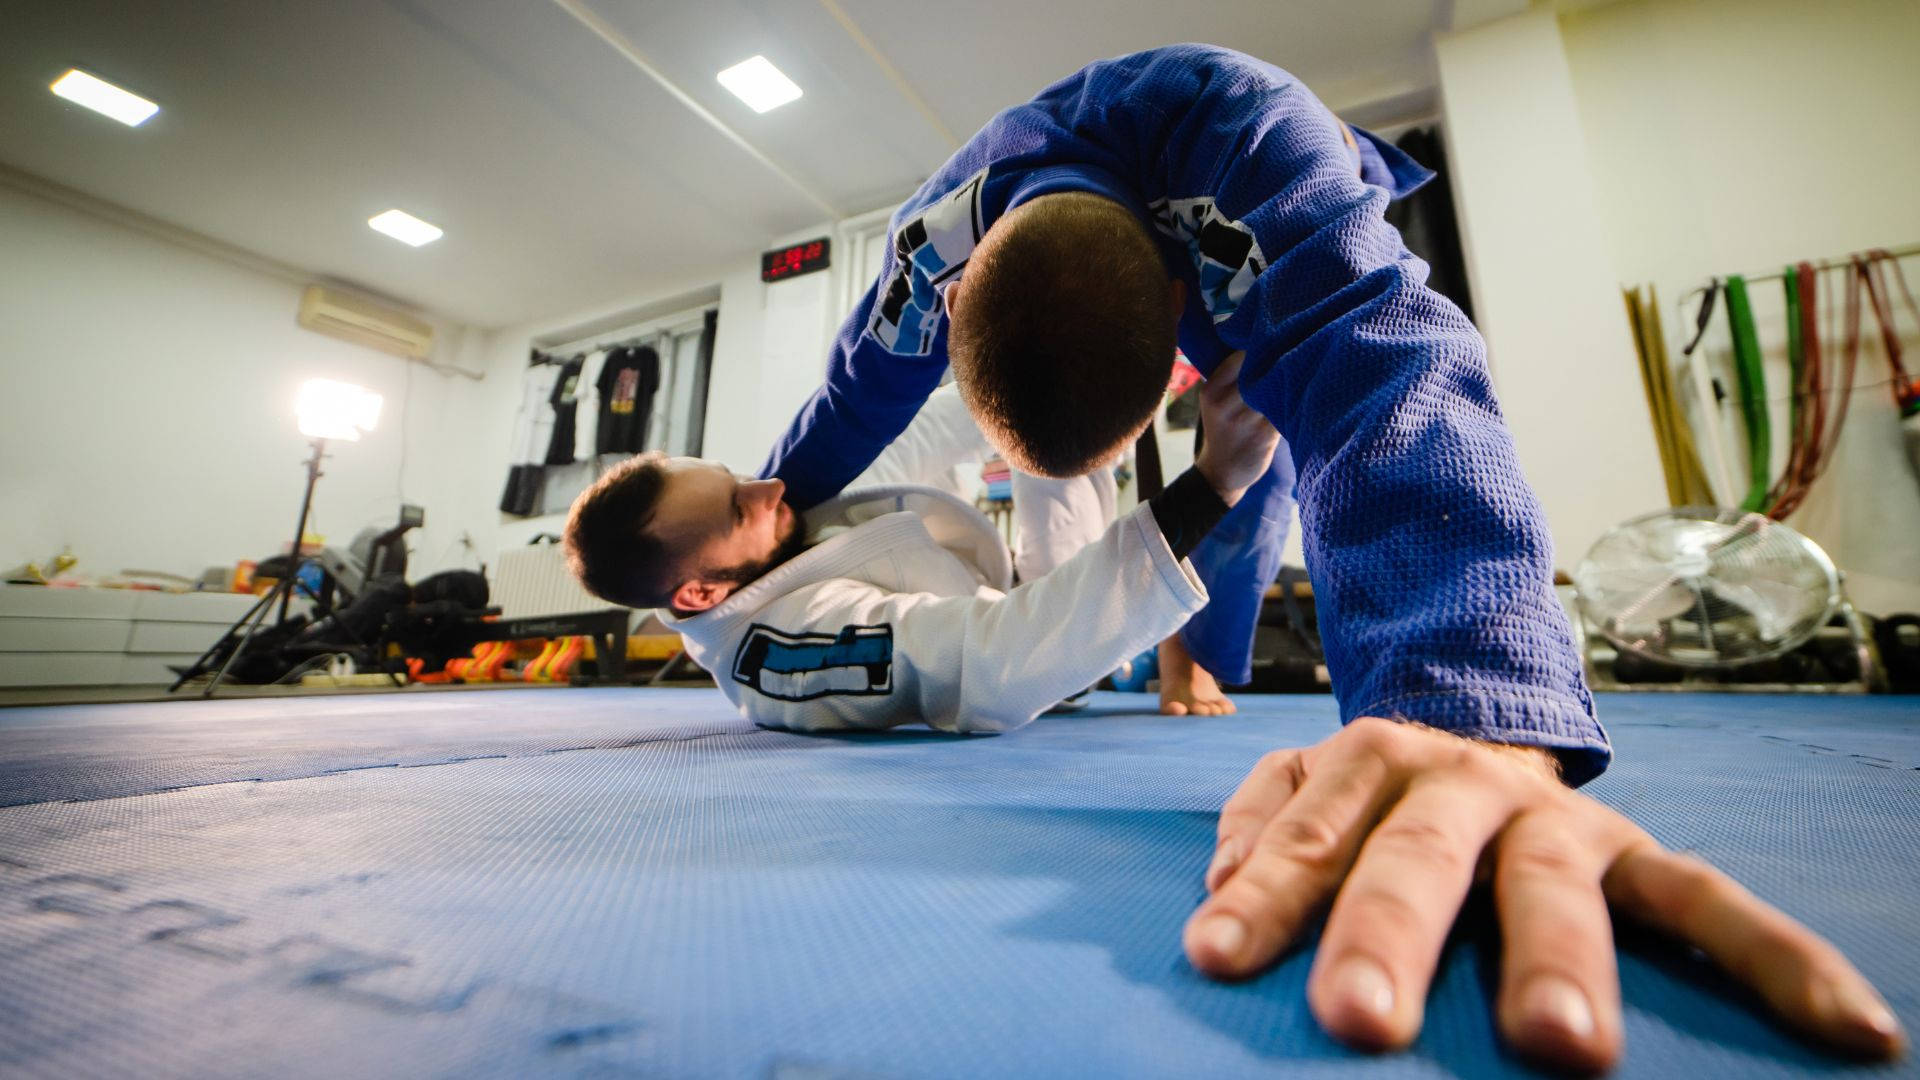 Brazilian Jiu-jitsu Martial Arts Combat Action Background